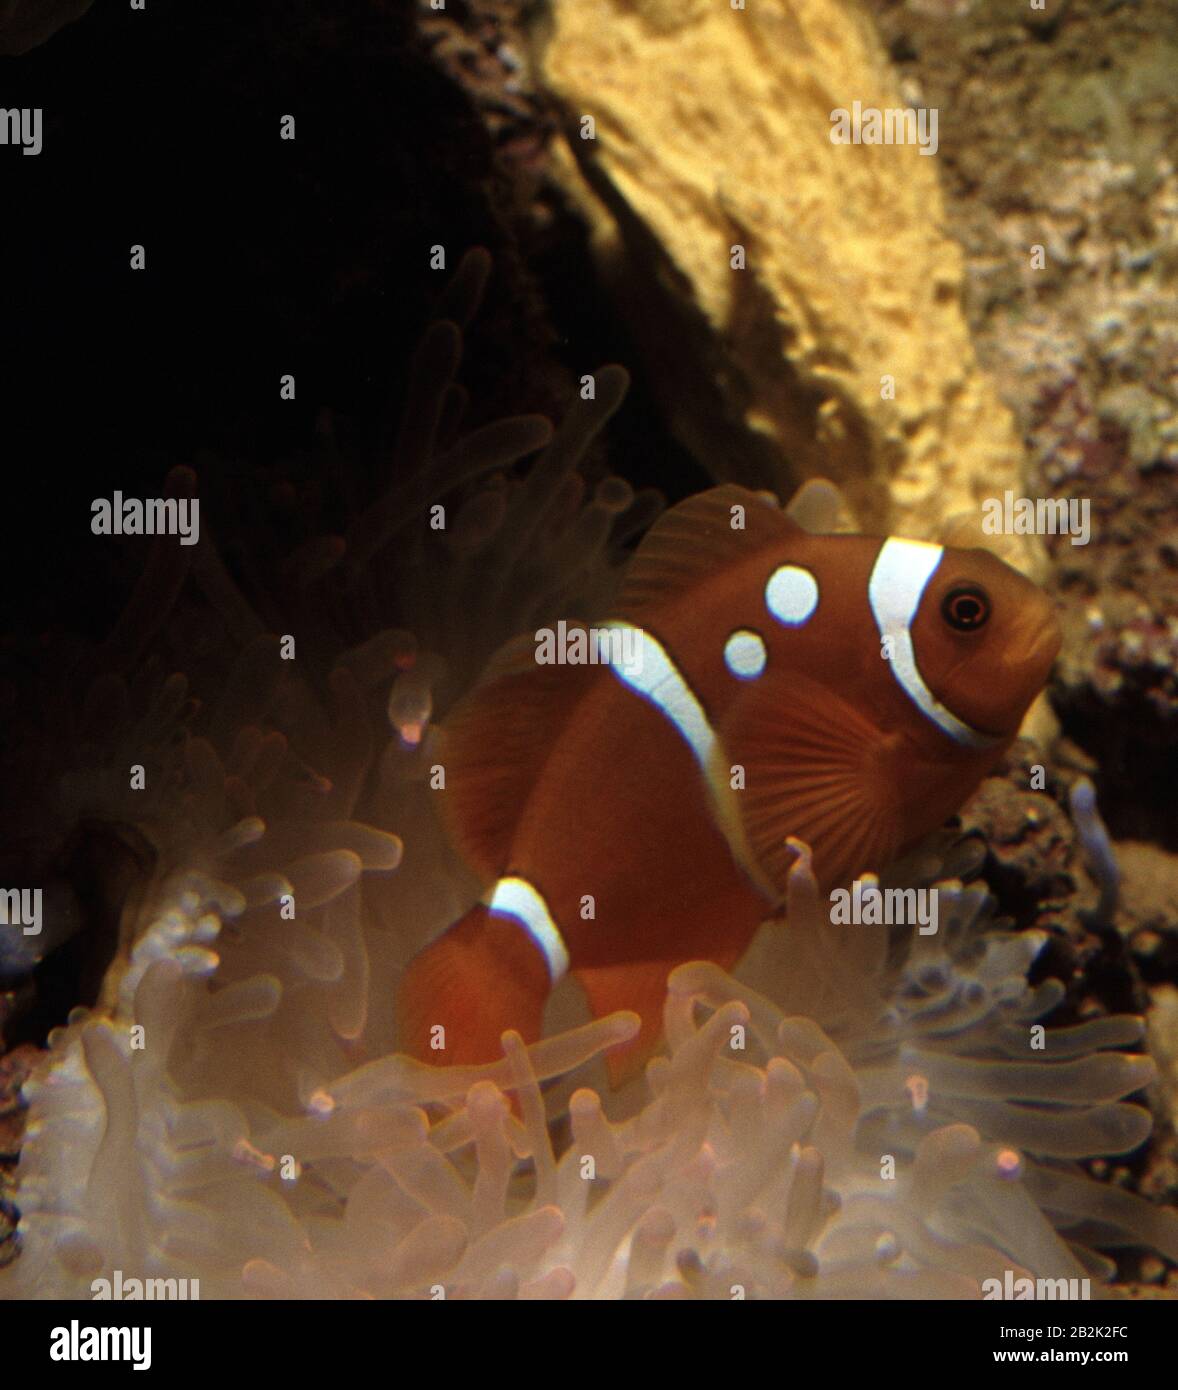 Spinecheek anemonefish, Premnas biaculeatus Stock Photo